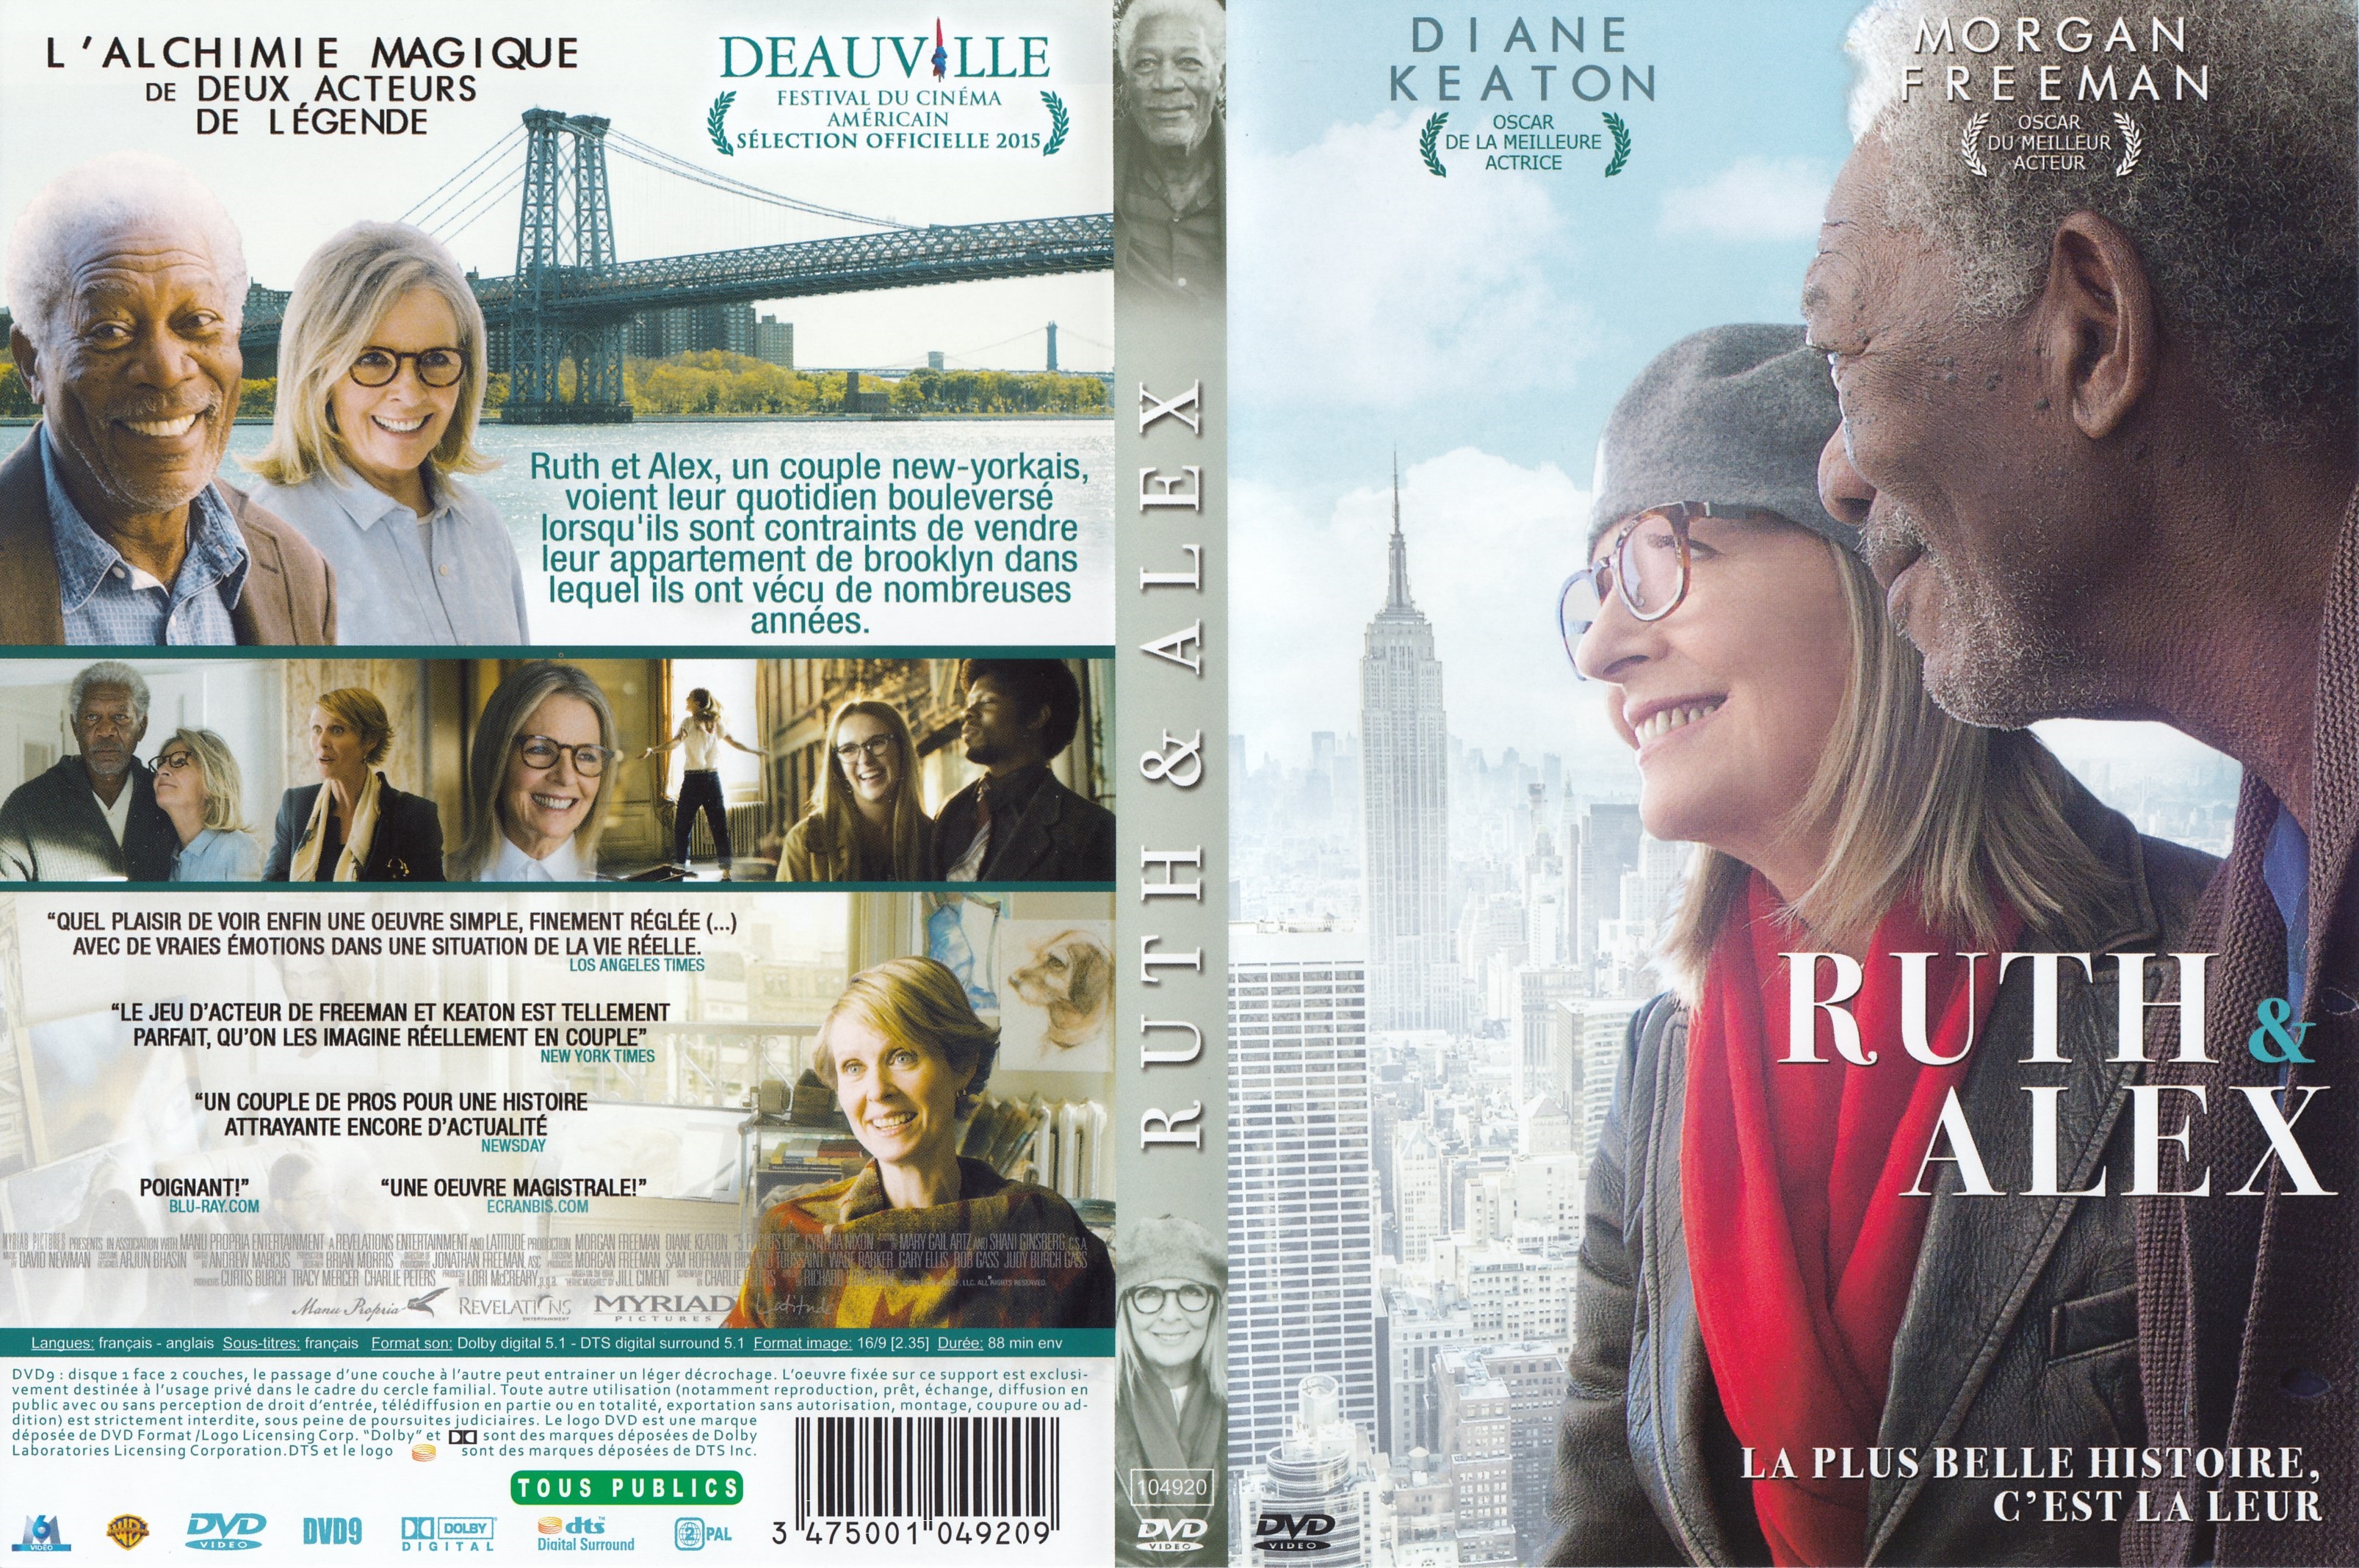 Jaquette DVD Ruth & Alex